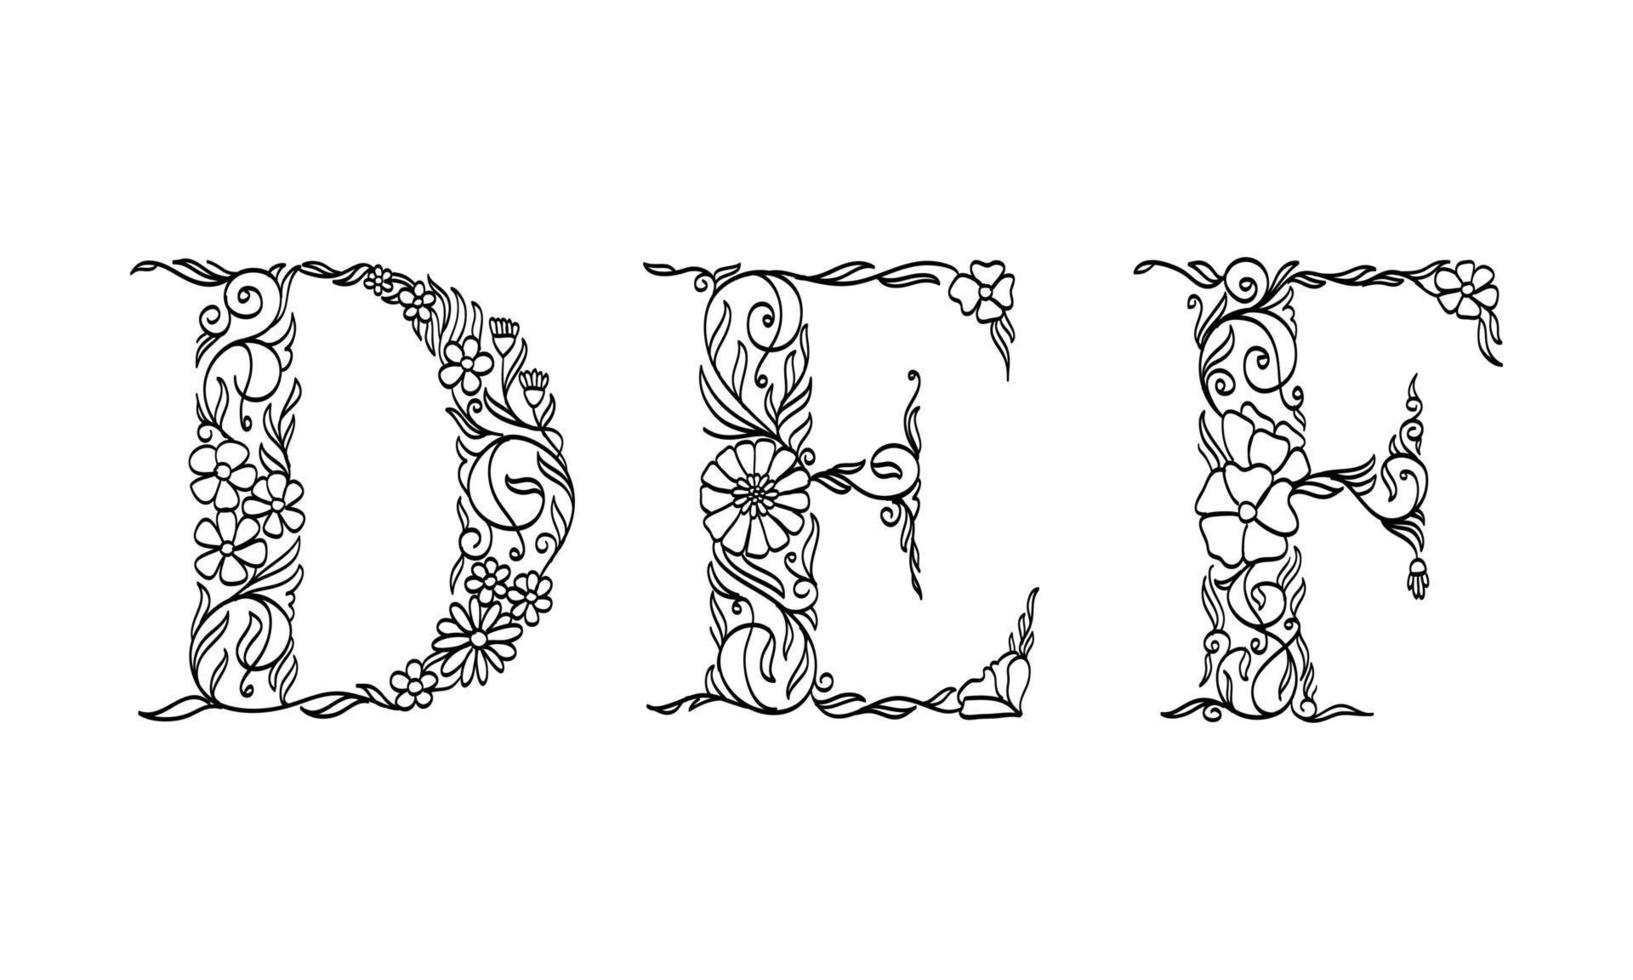 Ilustración floral alfabeto d, e, f, fuente gráfica de vector hecha por flores y hojas, arte lineal creativo dibujado a mano para la naturaleza abstracta y natural que se ve en una decoración de diseño monocromático único